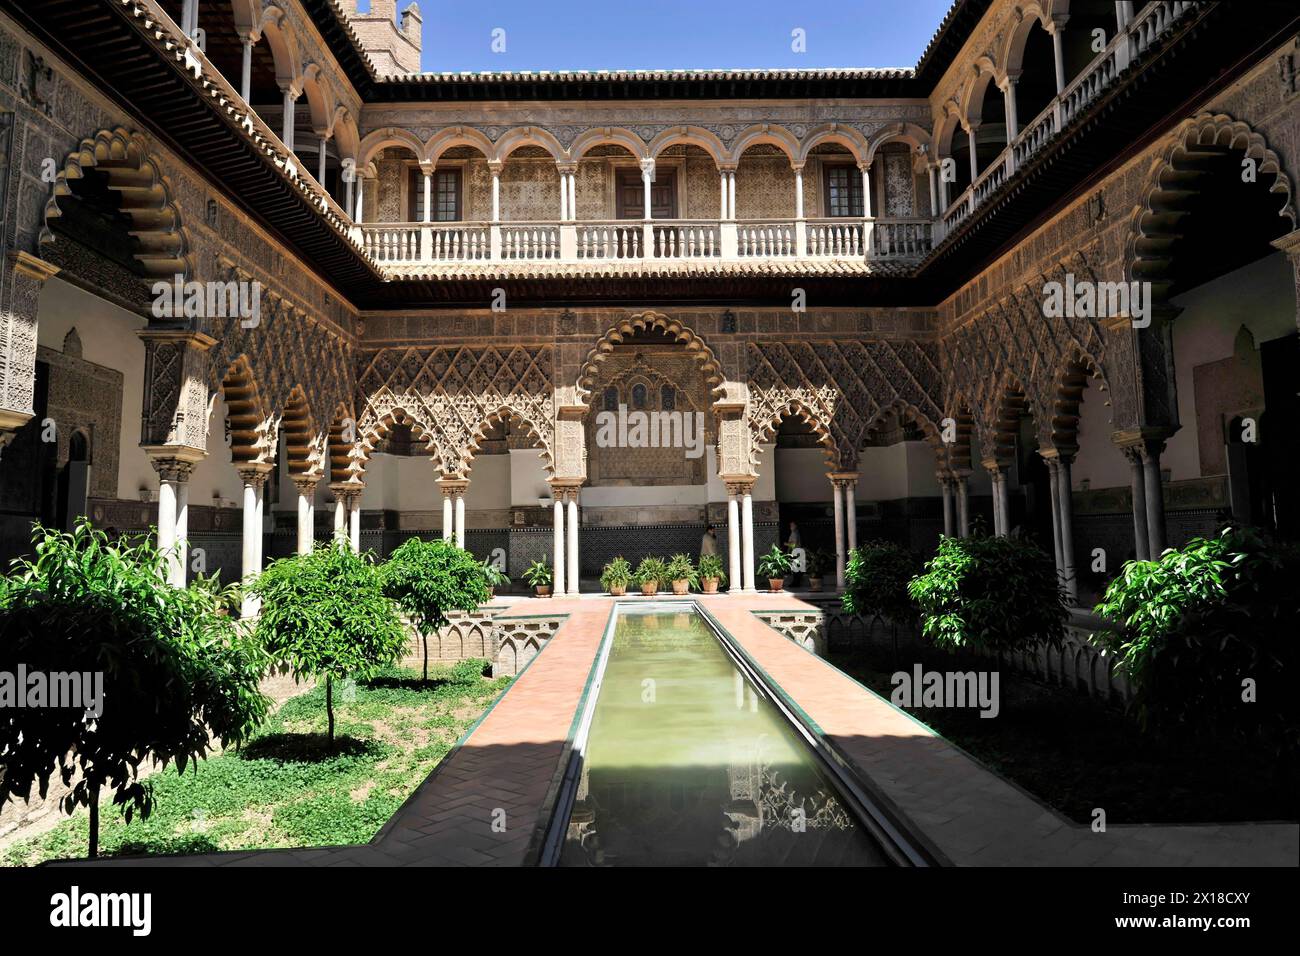 Siviglia, il Palazzo reale Real Alcazar, sito patrimonio dell'umanità dell'UNESCO, a Siviglia, i portici circondano un tranquillo cortile interno con un lungo canale d'acqua Foto Stock